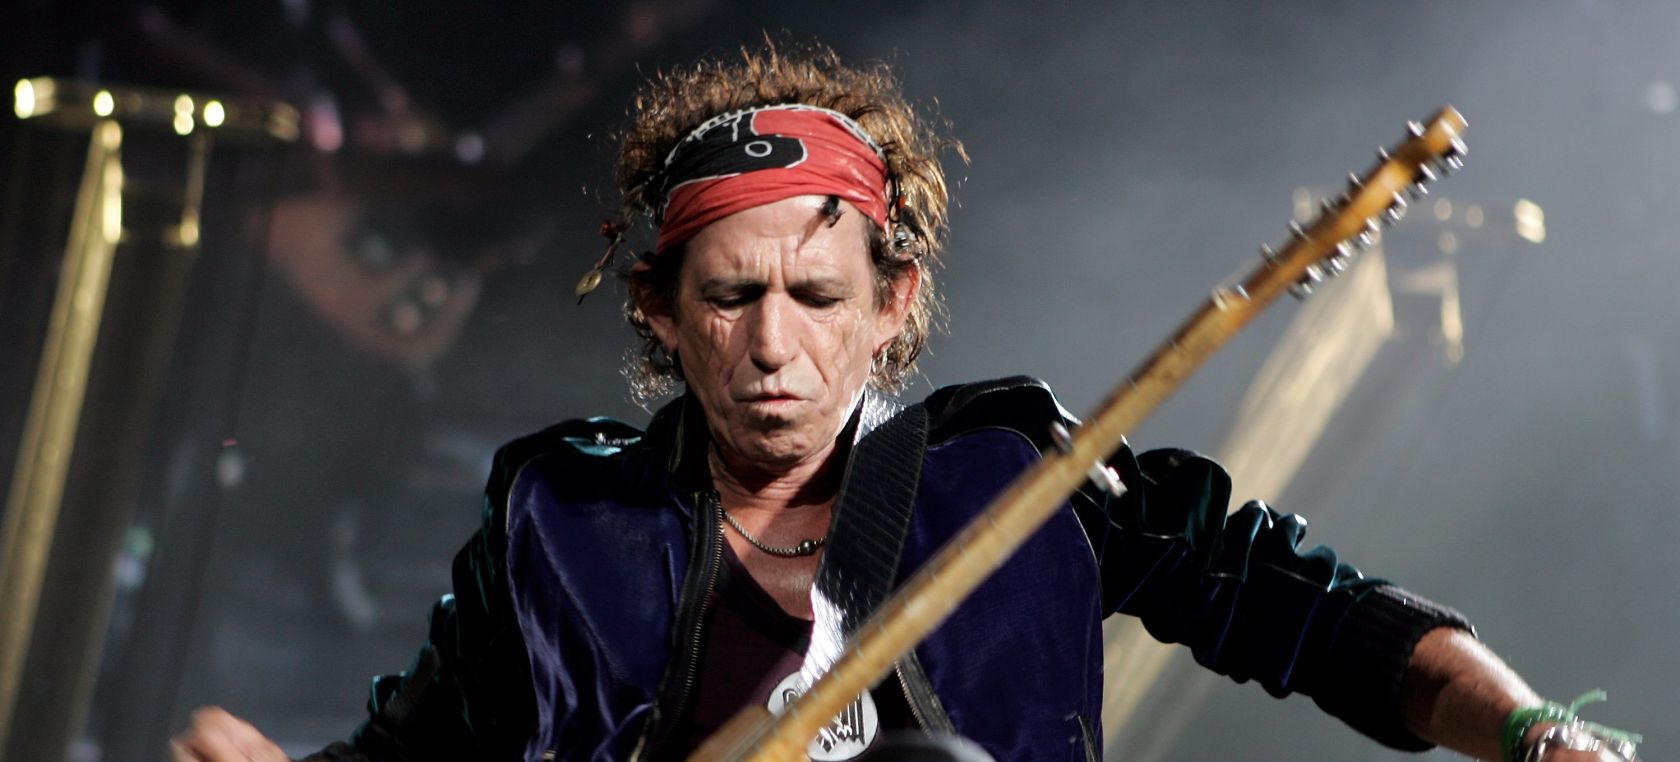 Keith Richards confirma nueva música de los Rolling Stones con esta fotografía